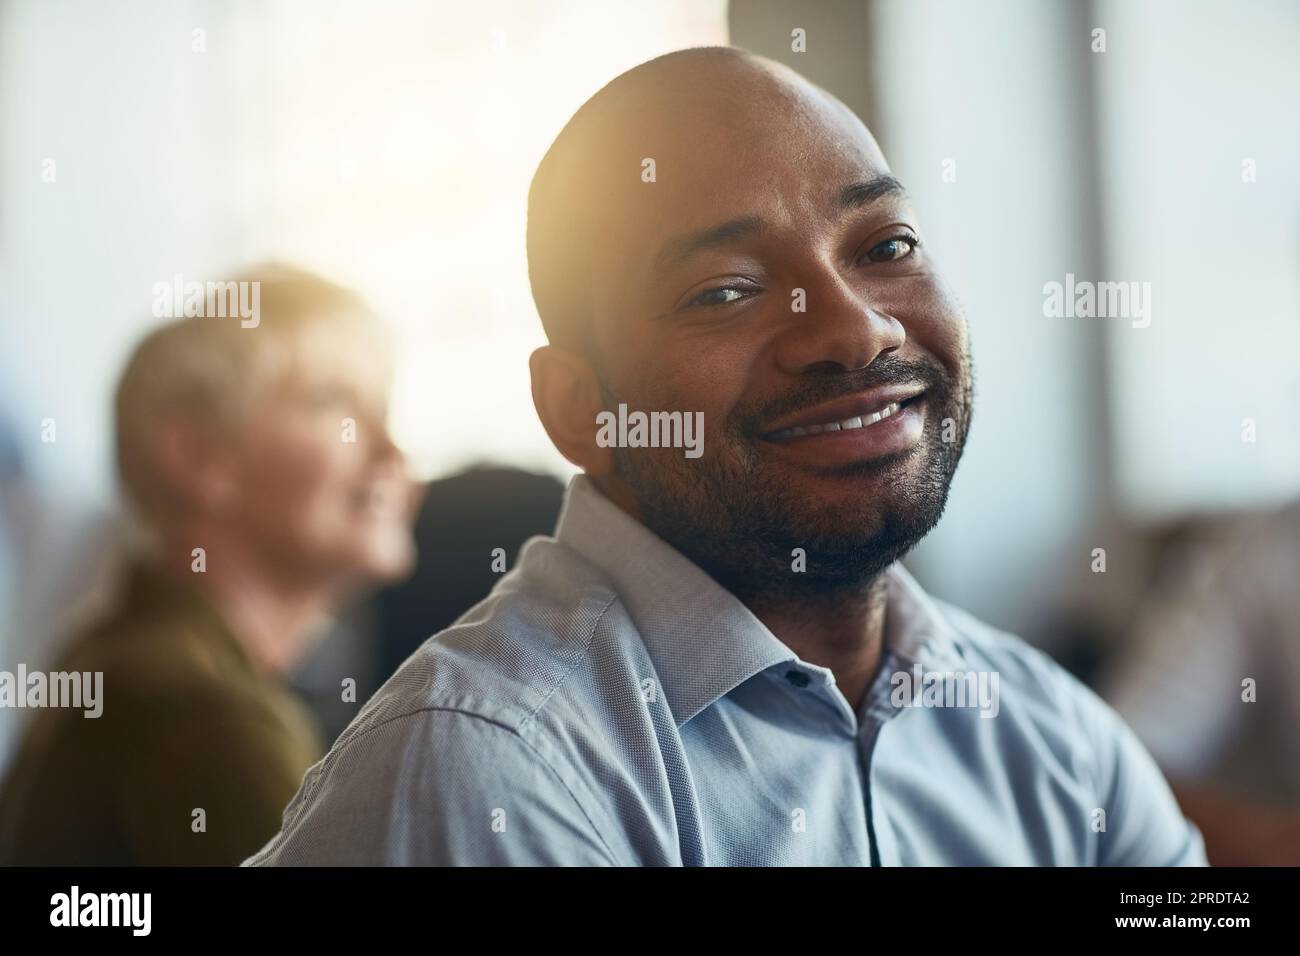 Selbstbewusster, glücklicher und motivierter Geschäftsmann, der in einem Büromeeting sitzt. Gesicht eines lächelnden afrikanischen Unternehmers, der mit seiner Jobauswahl zufrieden ist, während er an einer Präsentation oder einem Workshop teilnimmt Stockfoto